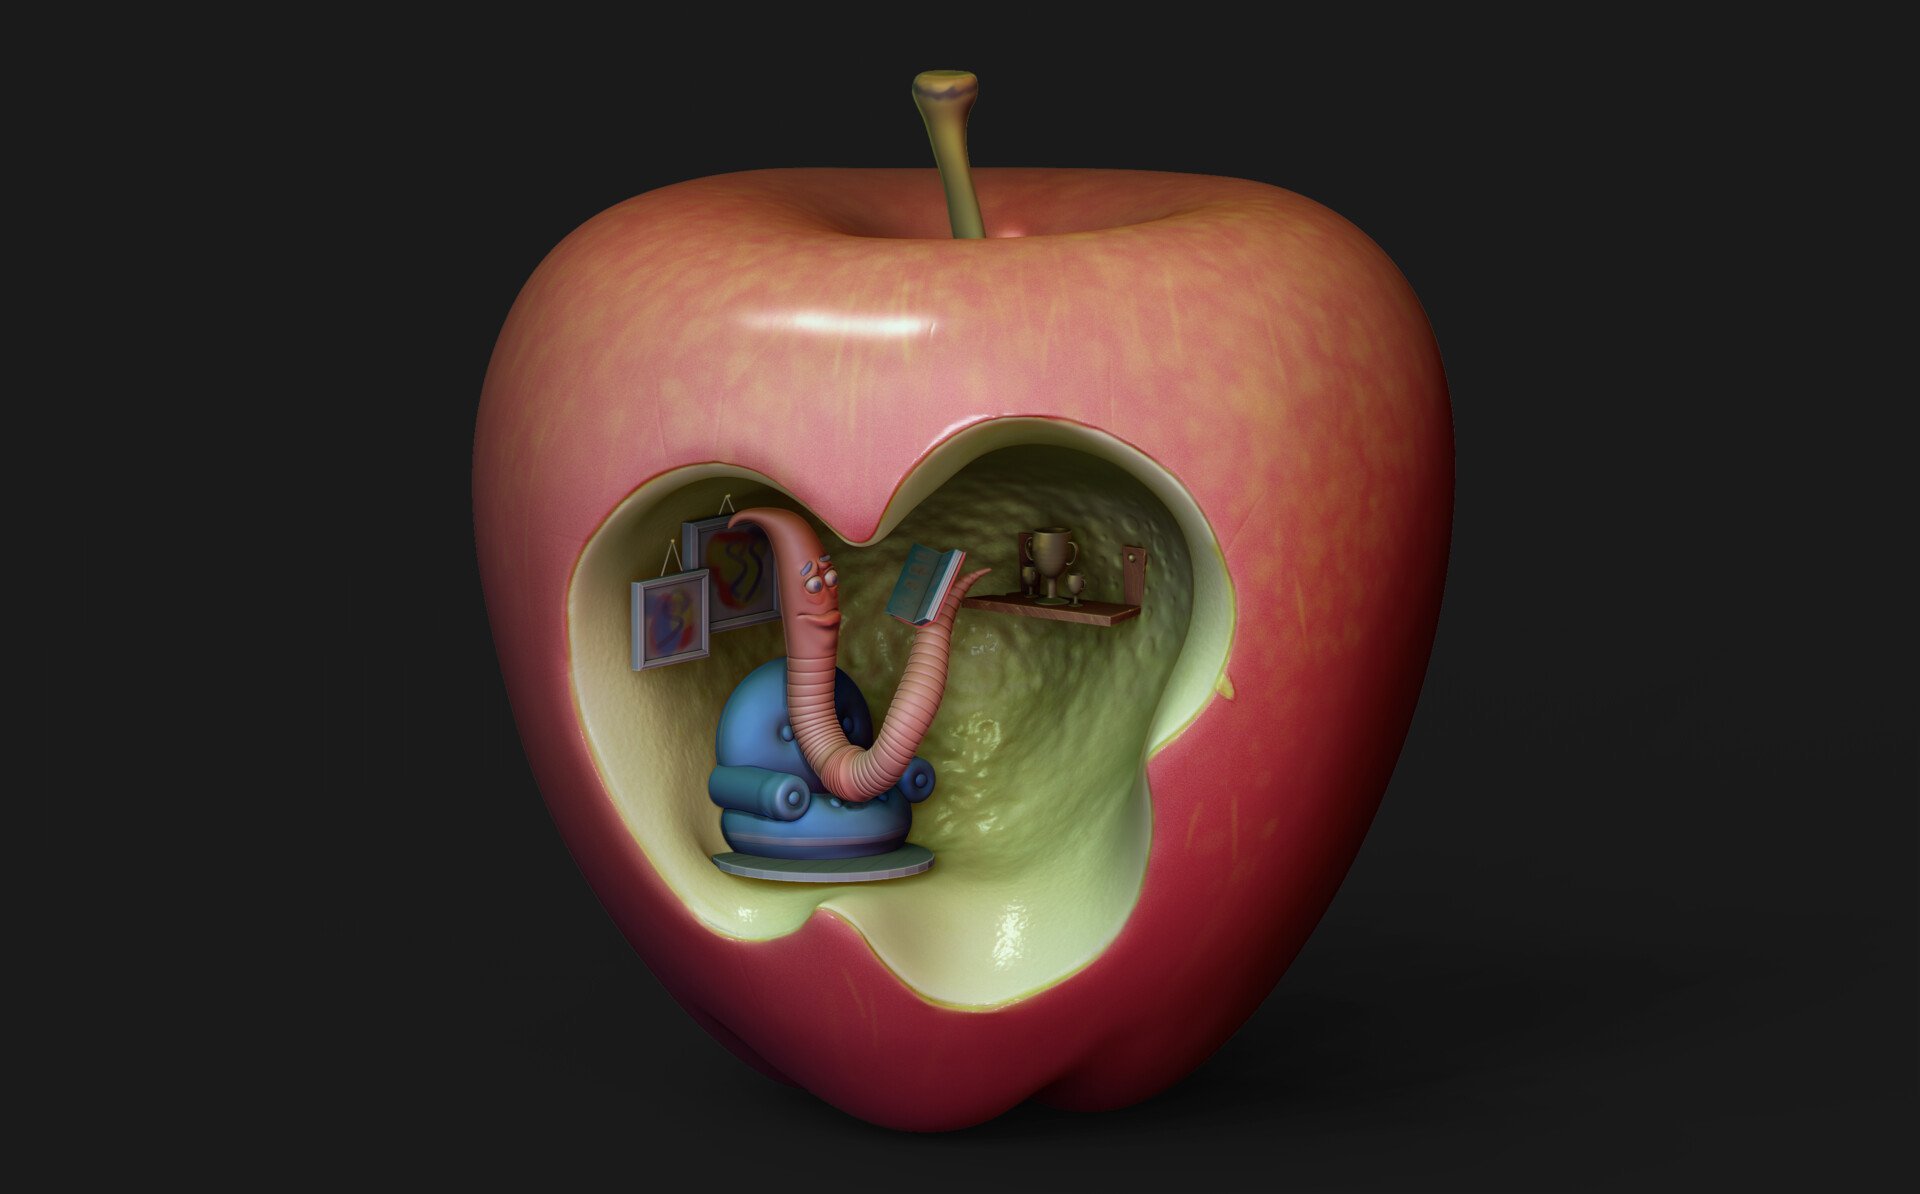 Жило было яблоко. Яблоко червивое АПЛ. Яблоко с червяком. Червь в яблоке.